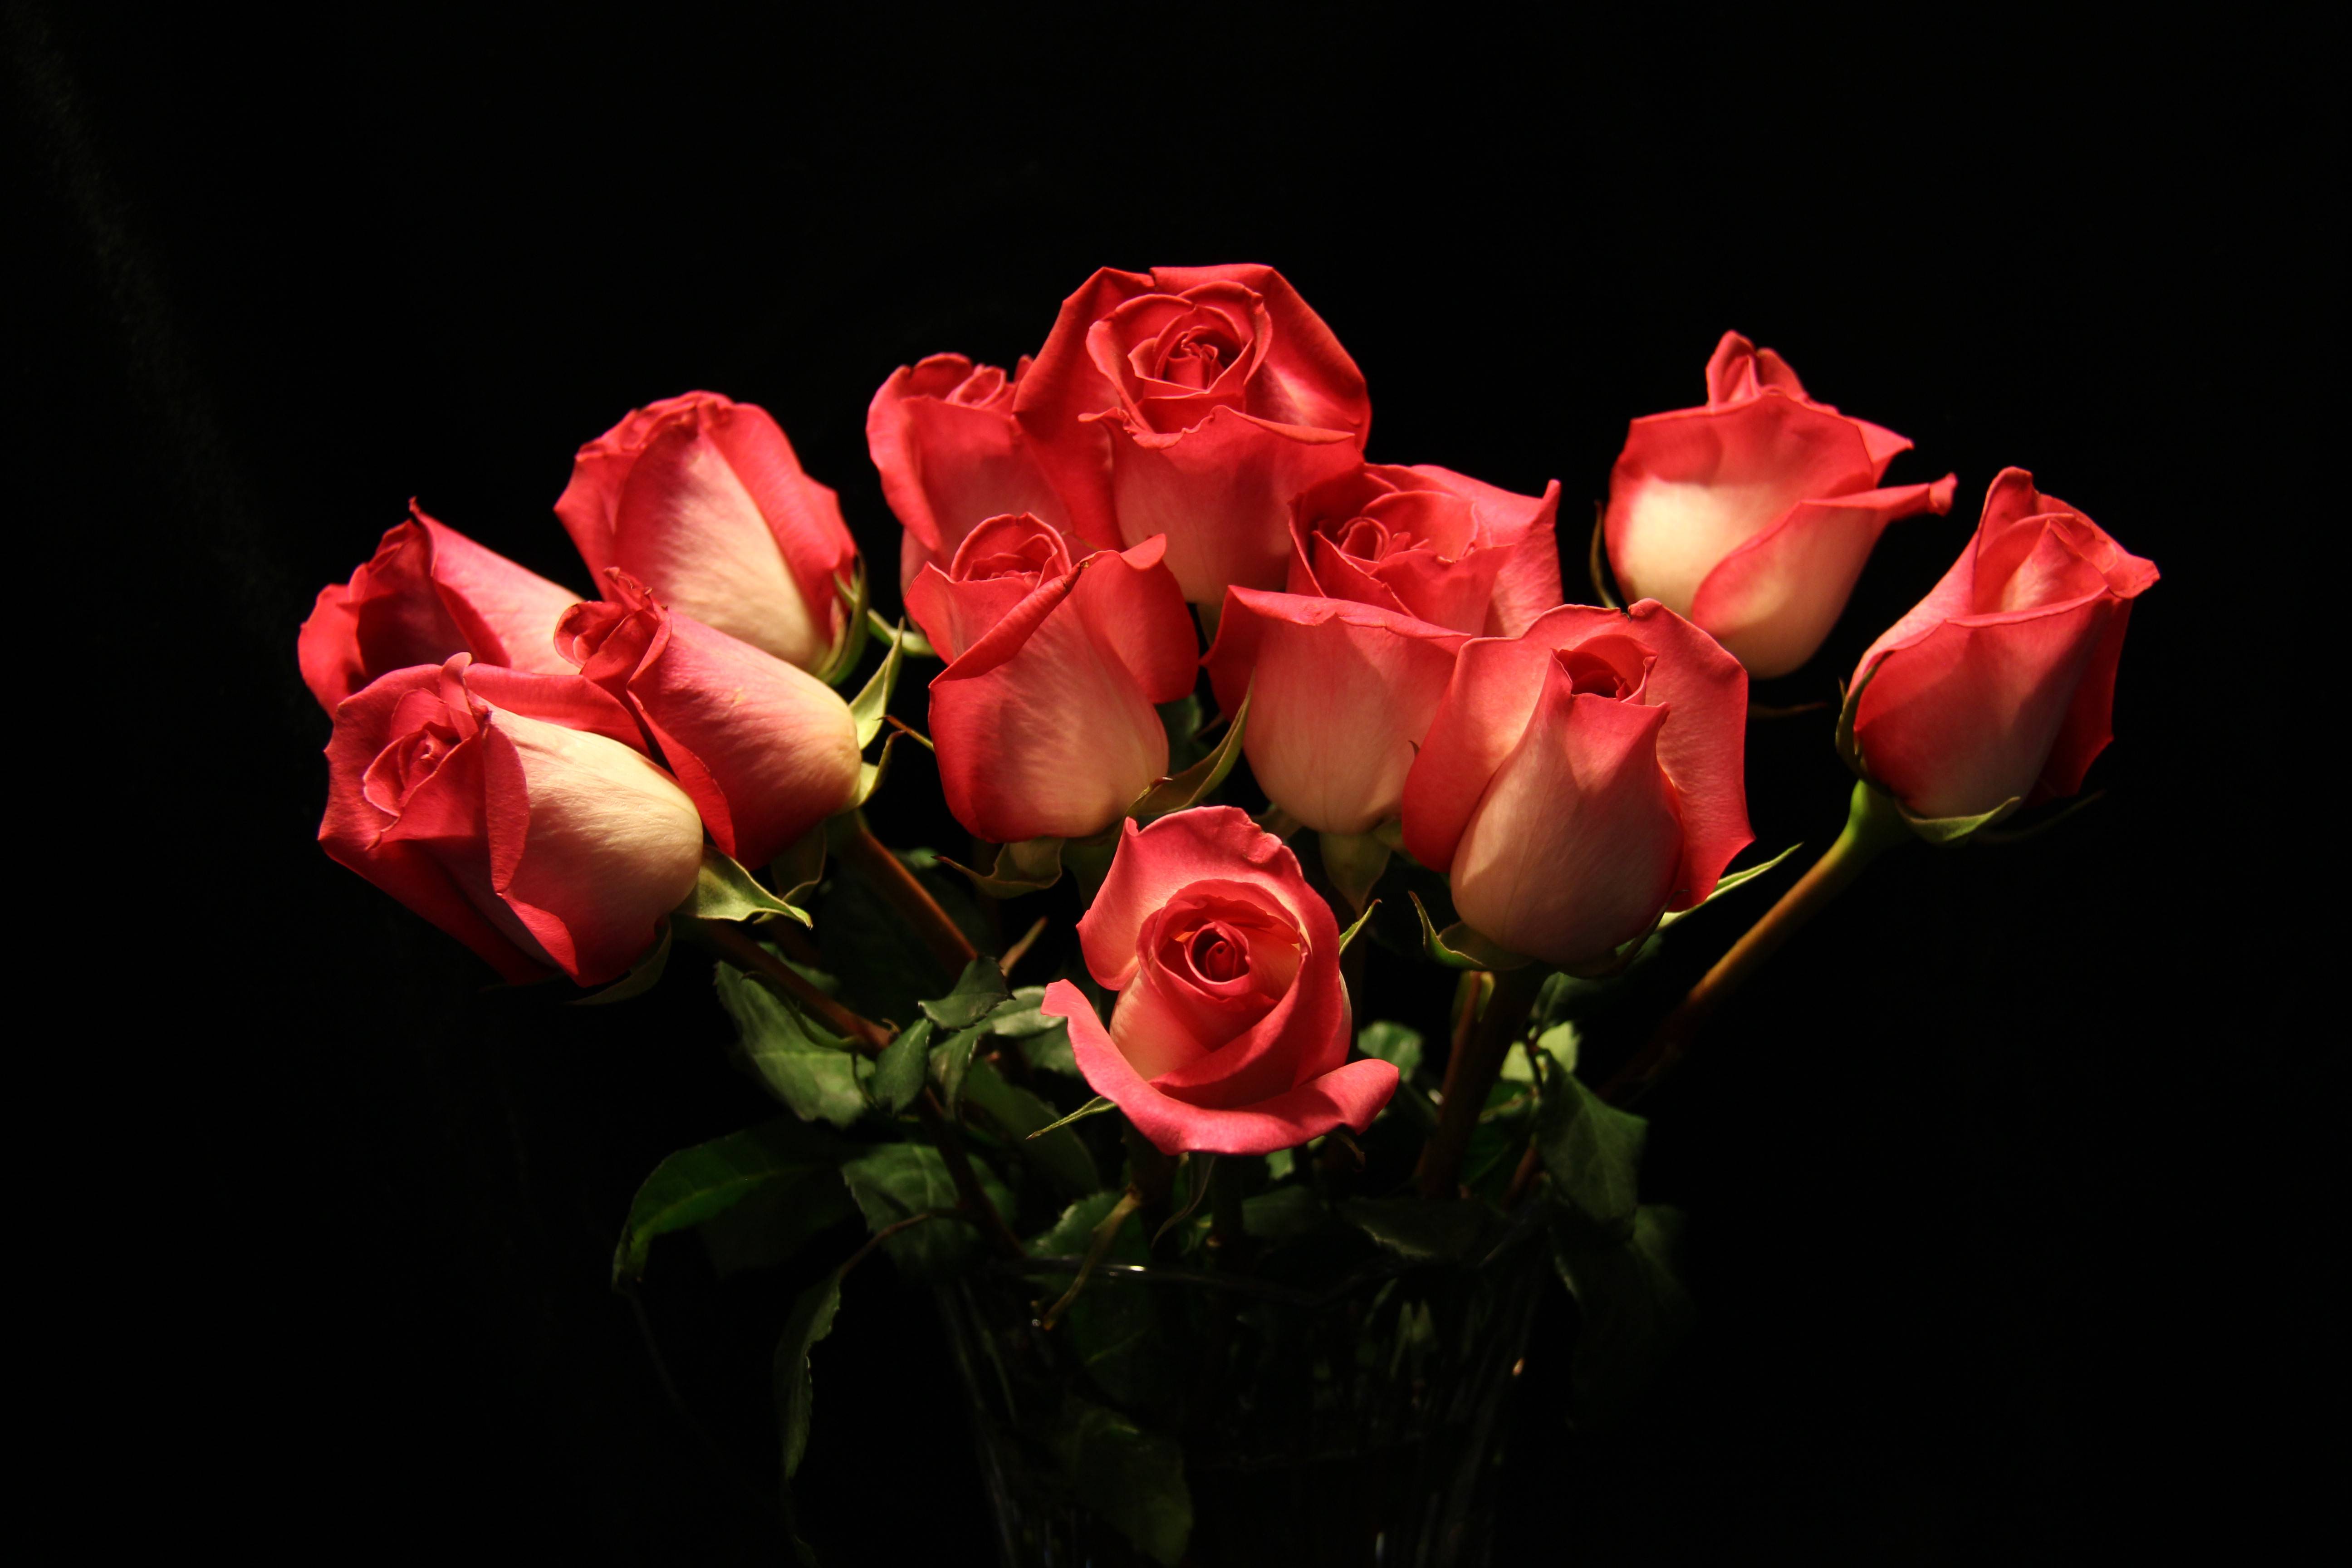 Фото флора черный фон букет роз - бесплатные картинки на Fonwall